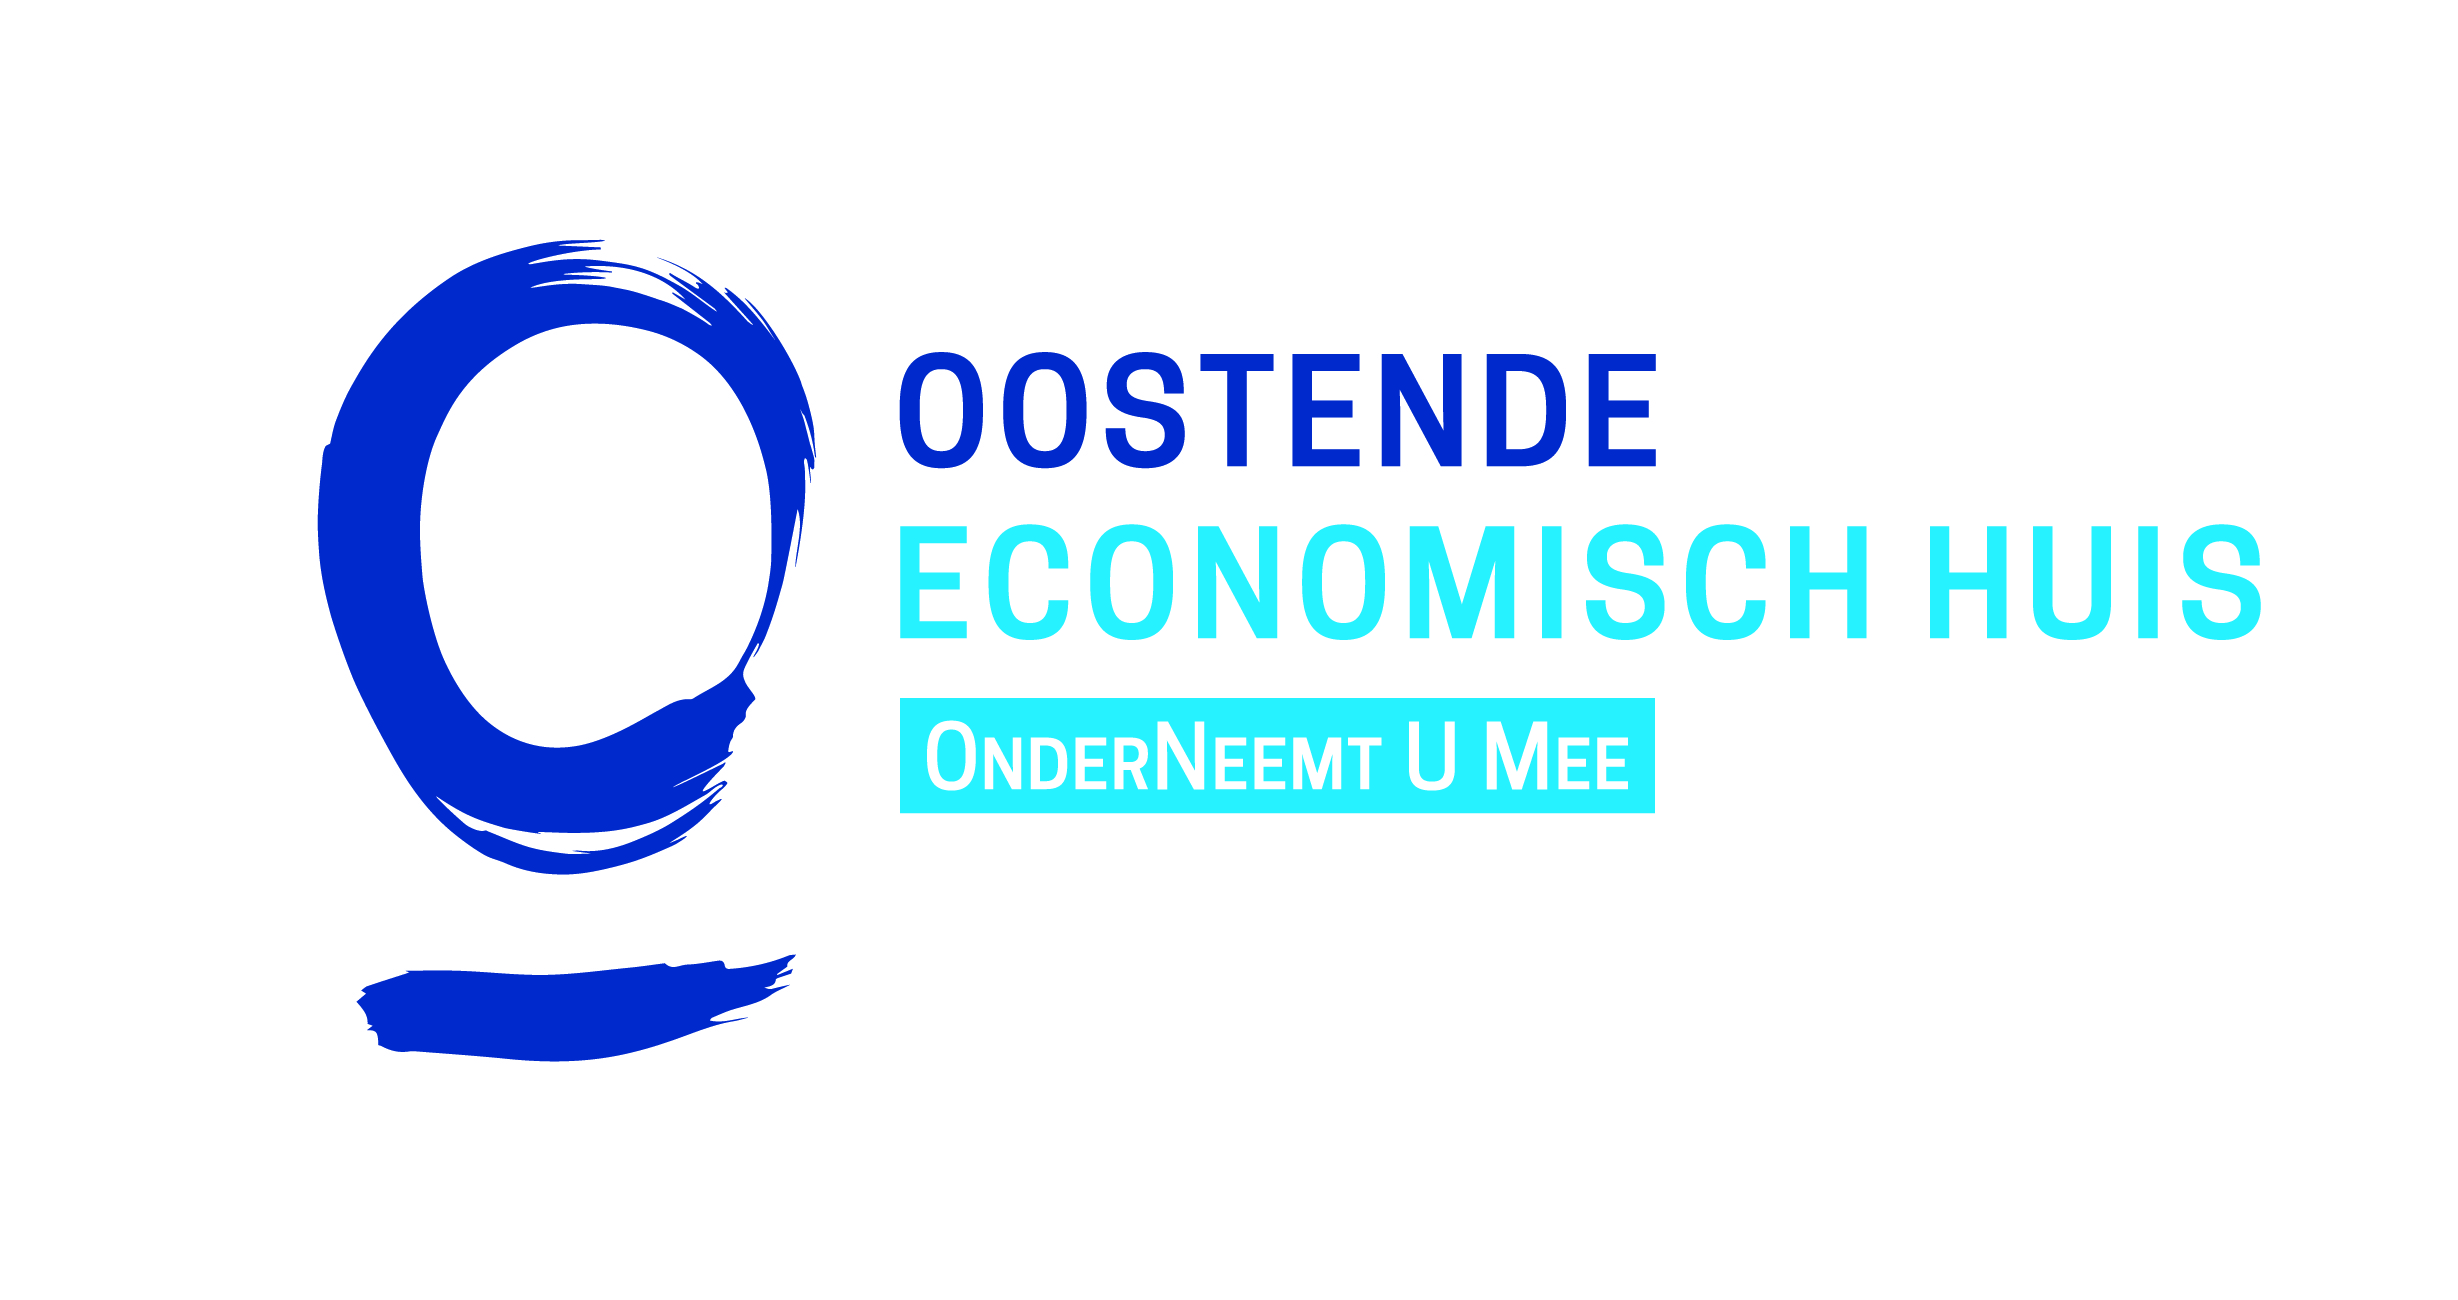 Oostende2work - Economisch Huis Oostende 